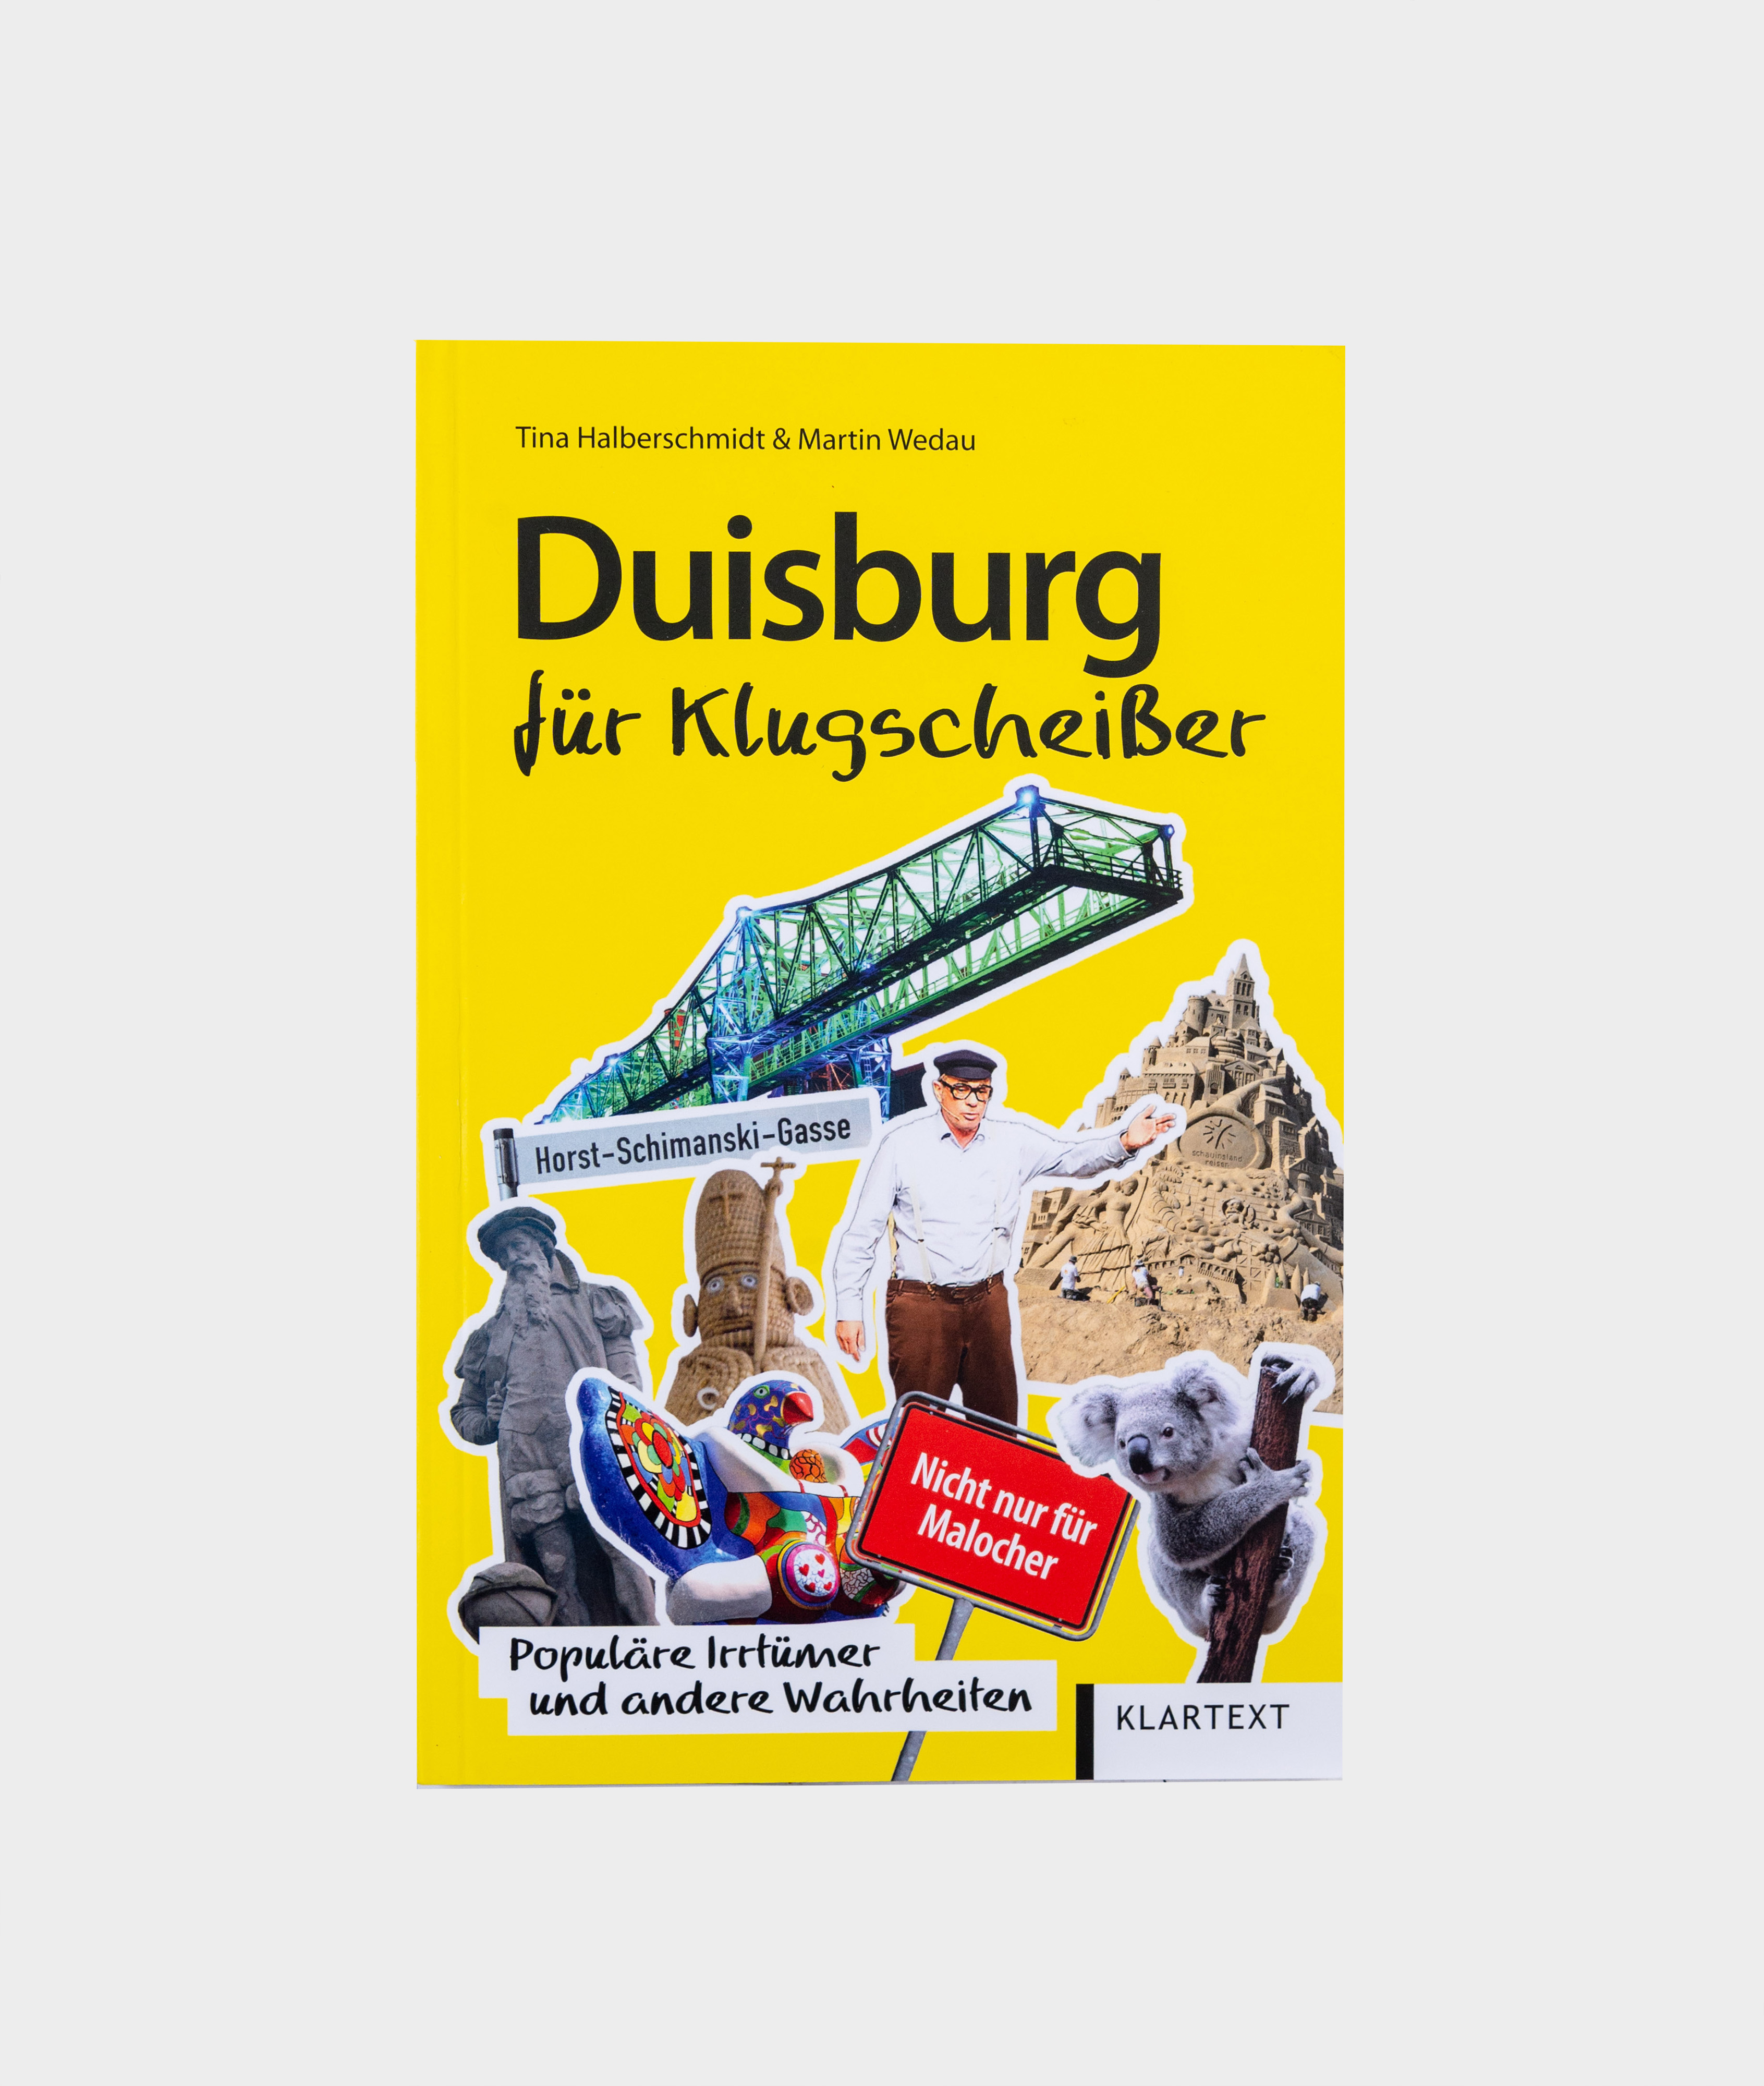 Duisburg für Klugscheißer